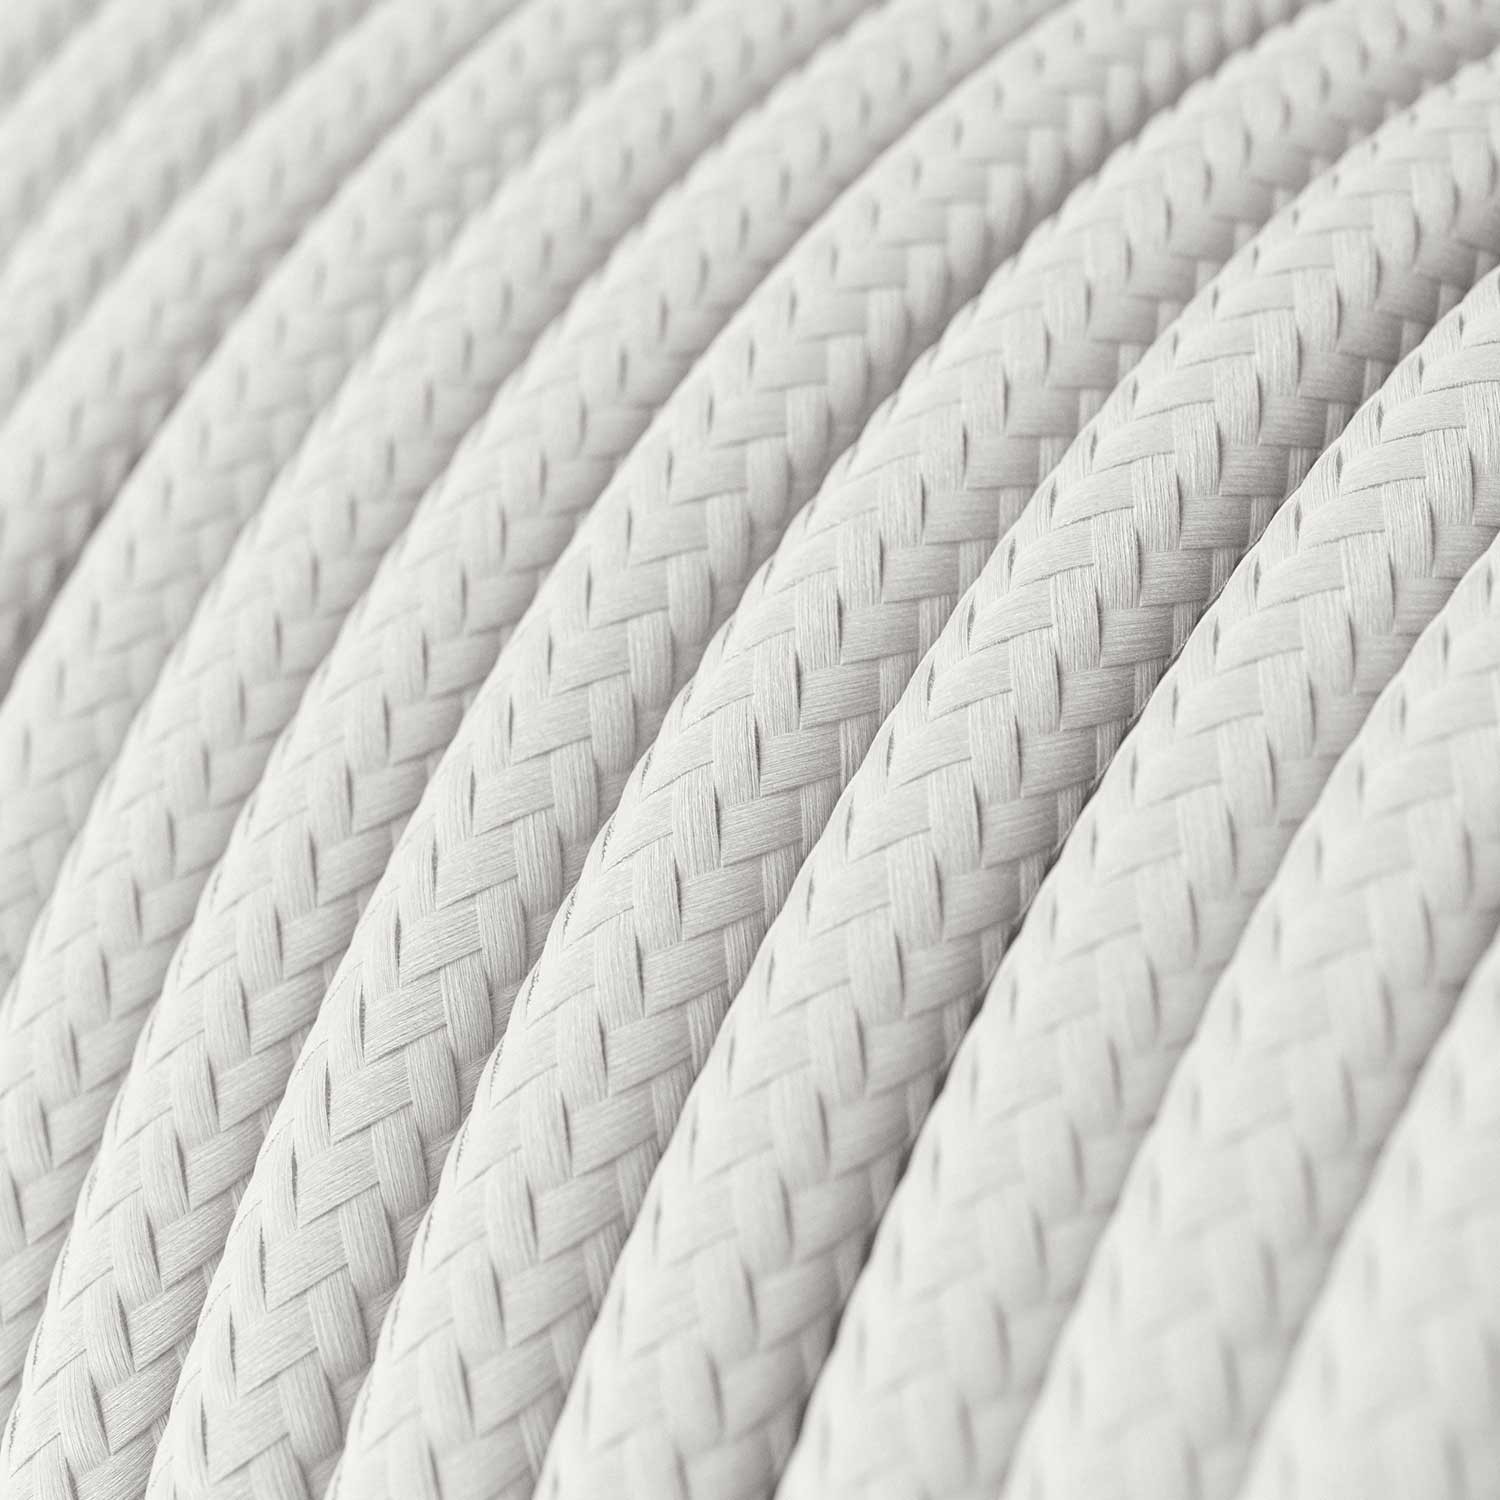 Visilica s tekstilnim kabelom, Tub-E14 sjenilom i metalnim detaljima - Proizvedeno u Italiji